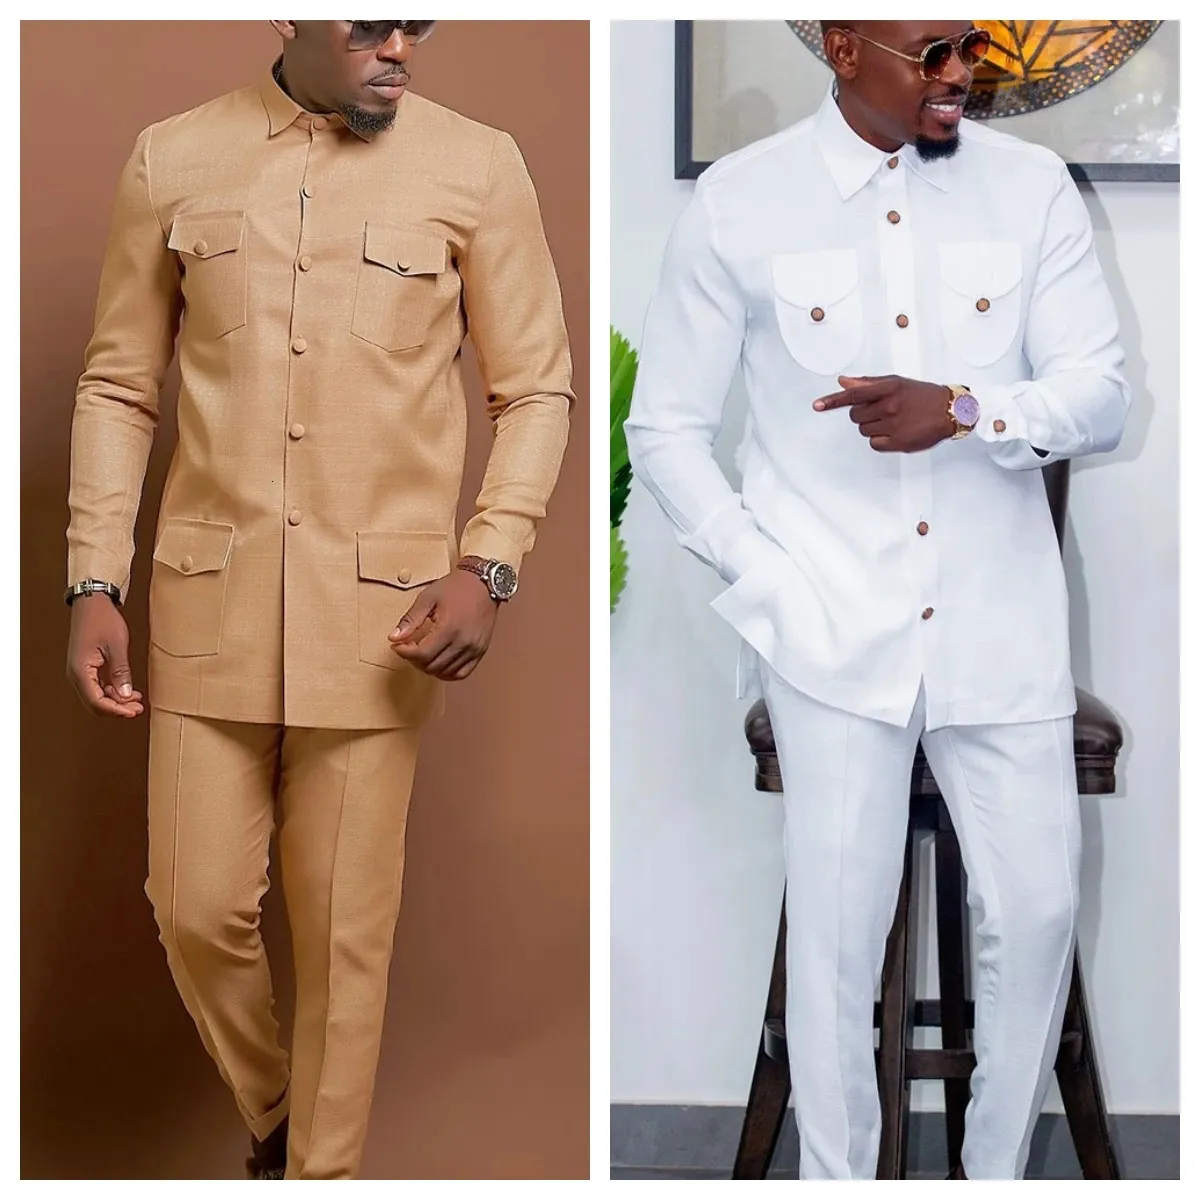 Mentime Temos mariage Suit en deux pièces Robe masculine pantalon long shirt couleur solide manches longues vestiges de style ethnique africain 240417